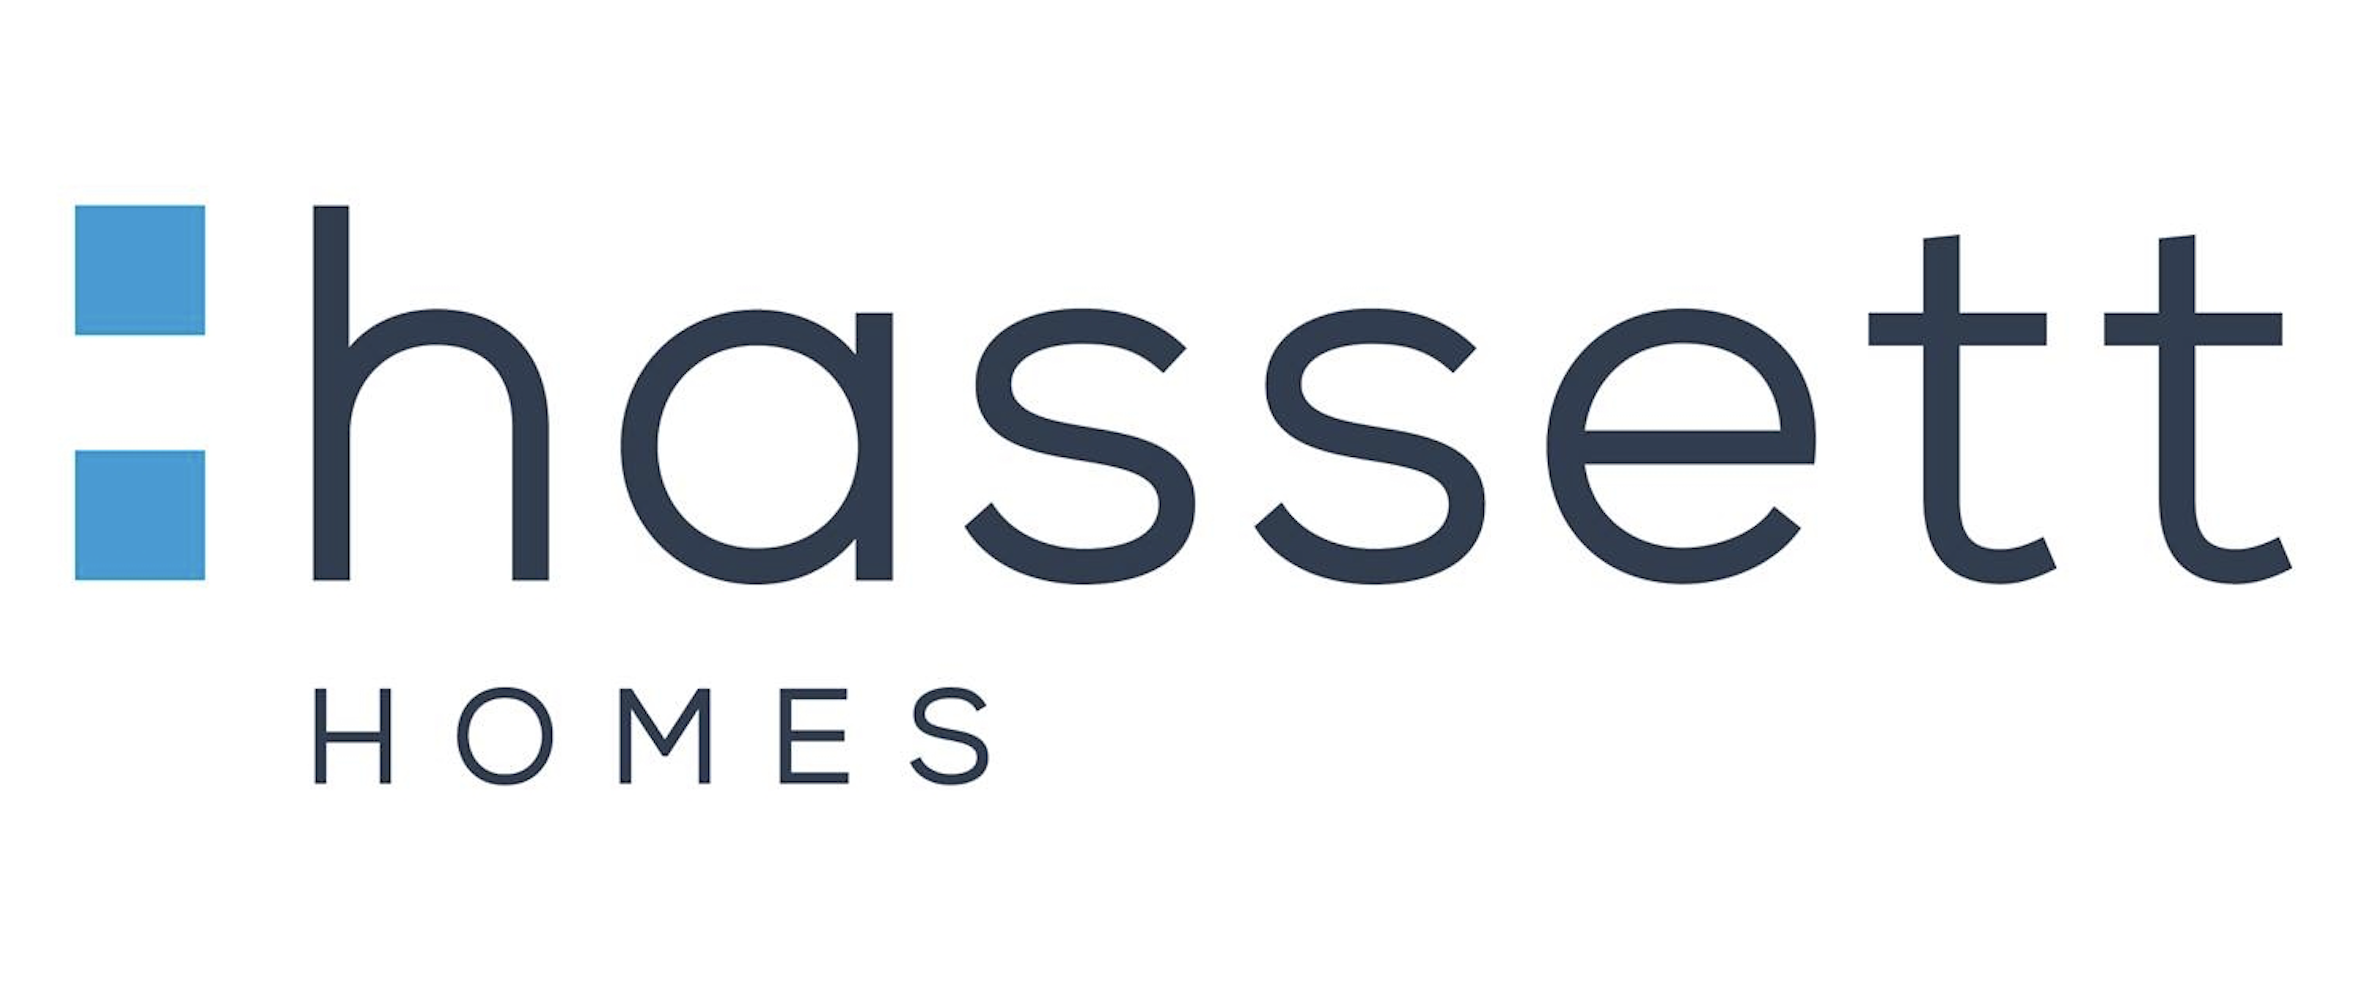 Hassett Homes Company Logo